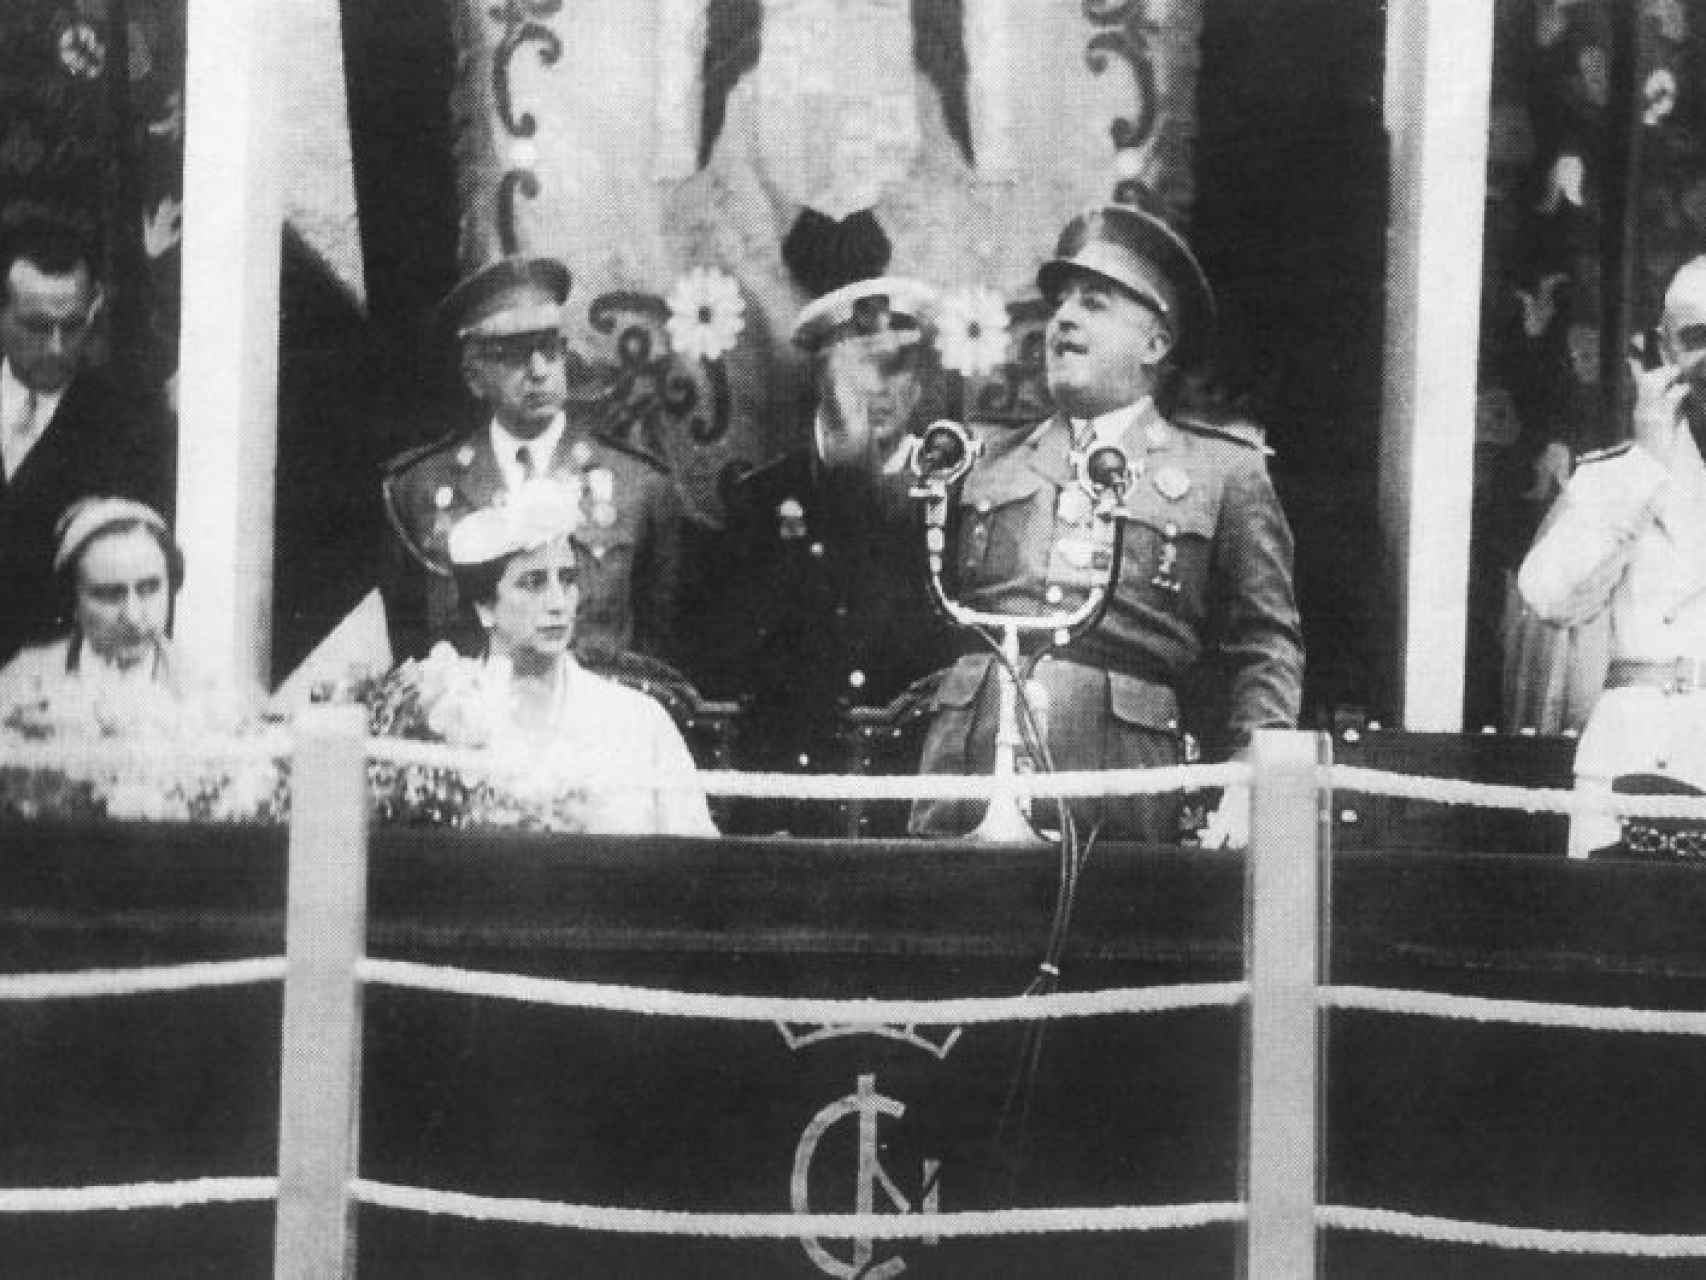 El domingo 9 de mayo de 1954, Franco se subió al balcón del ayuntamiento de Águeda del Caudillo para pronunciar su discurso de inauguración. Así fundaba pueblos su dictador, acompañado de su esposa y de su séquito de adláteres del Movimiento. Esta foto corresponde a ese día.